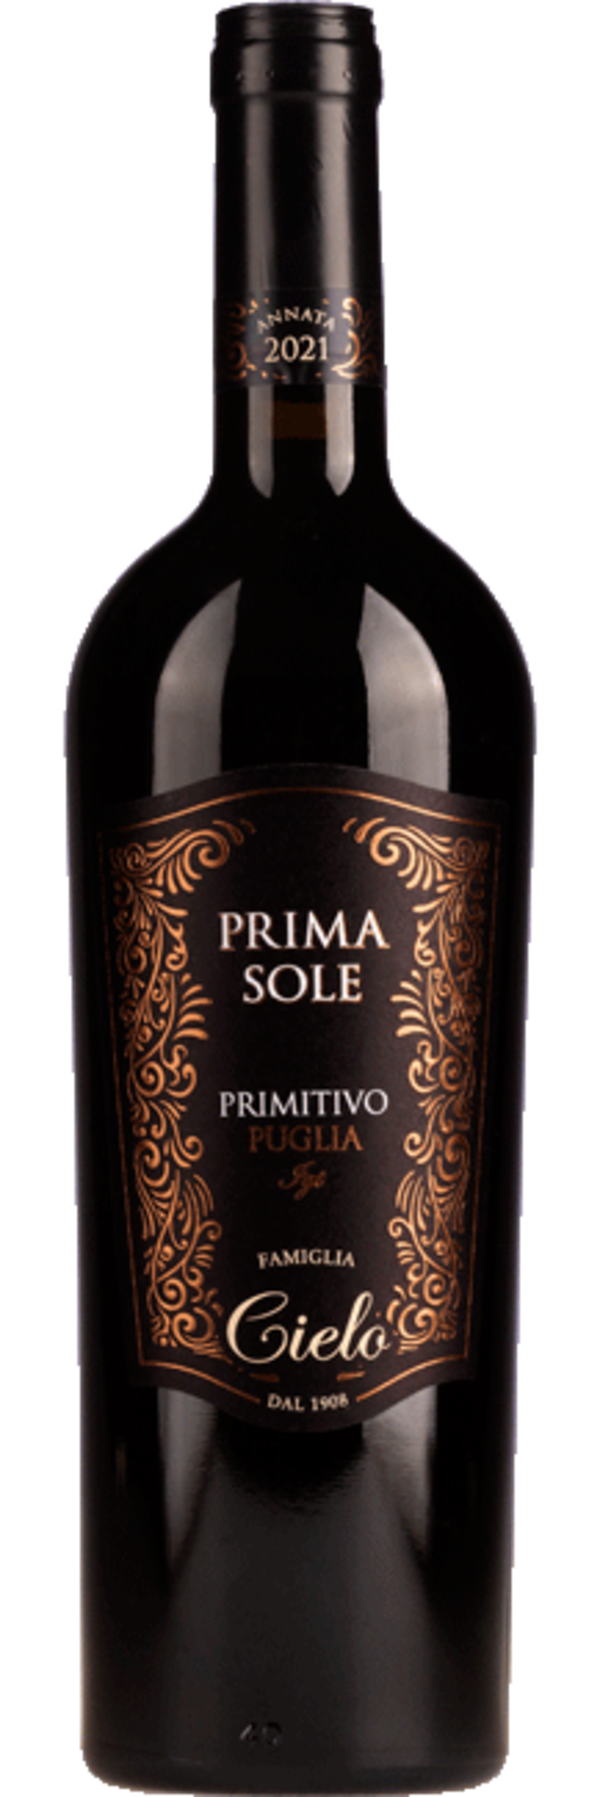 Primasole Primitivo Puglia 2021